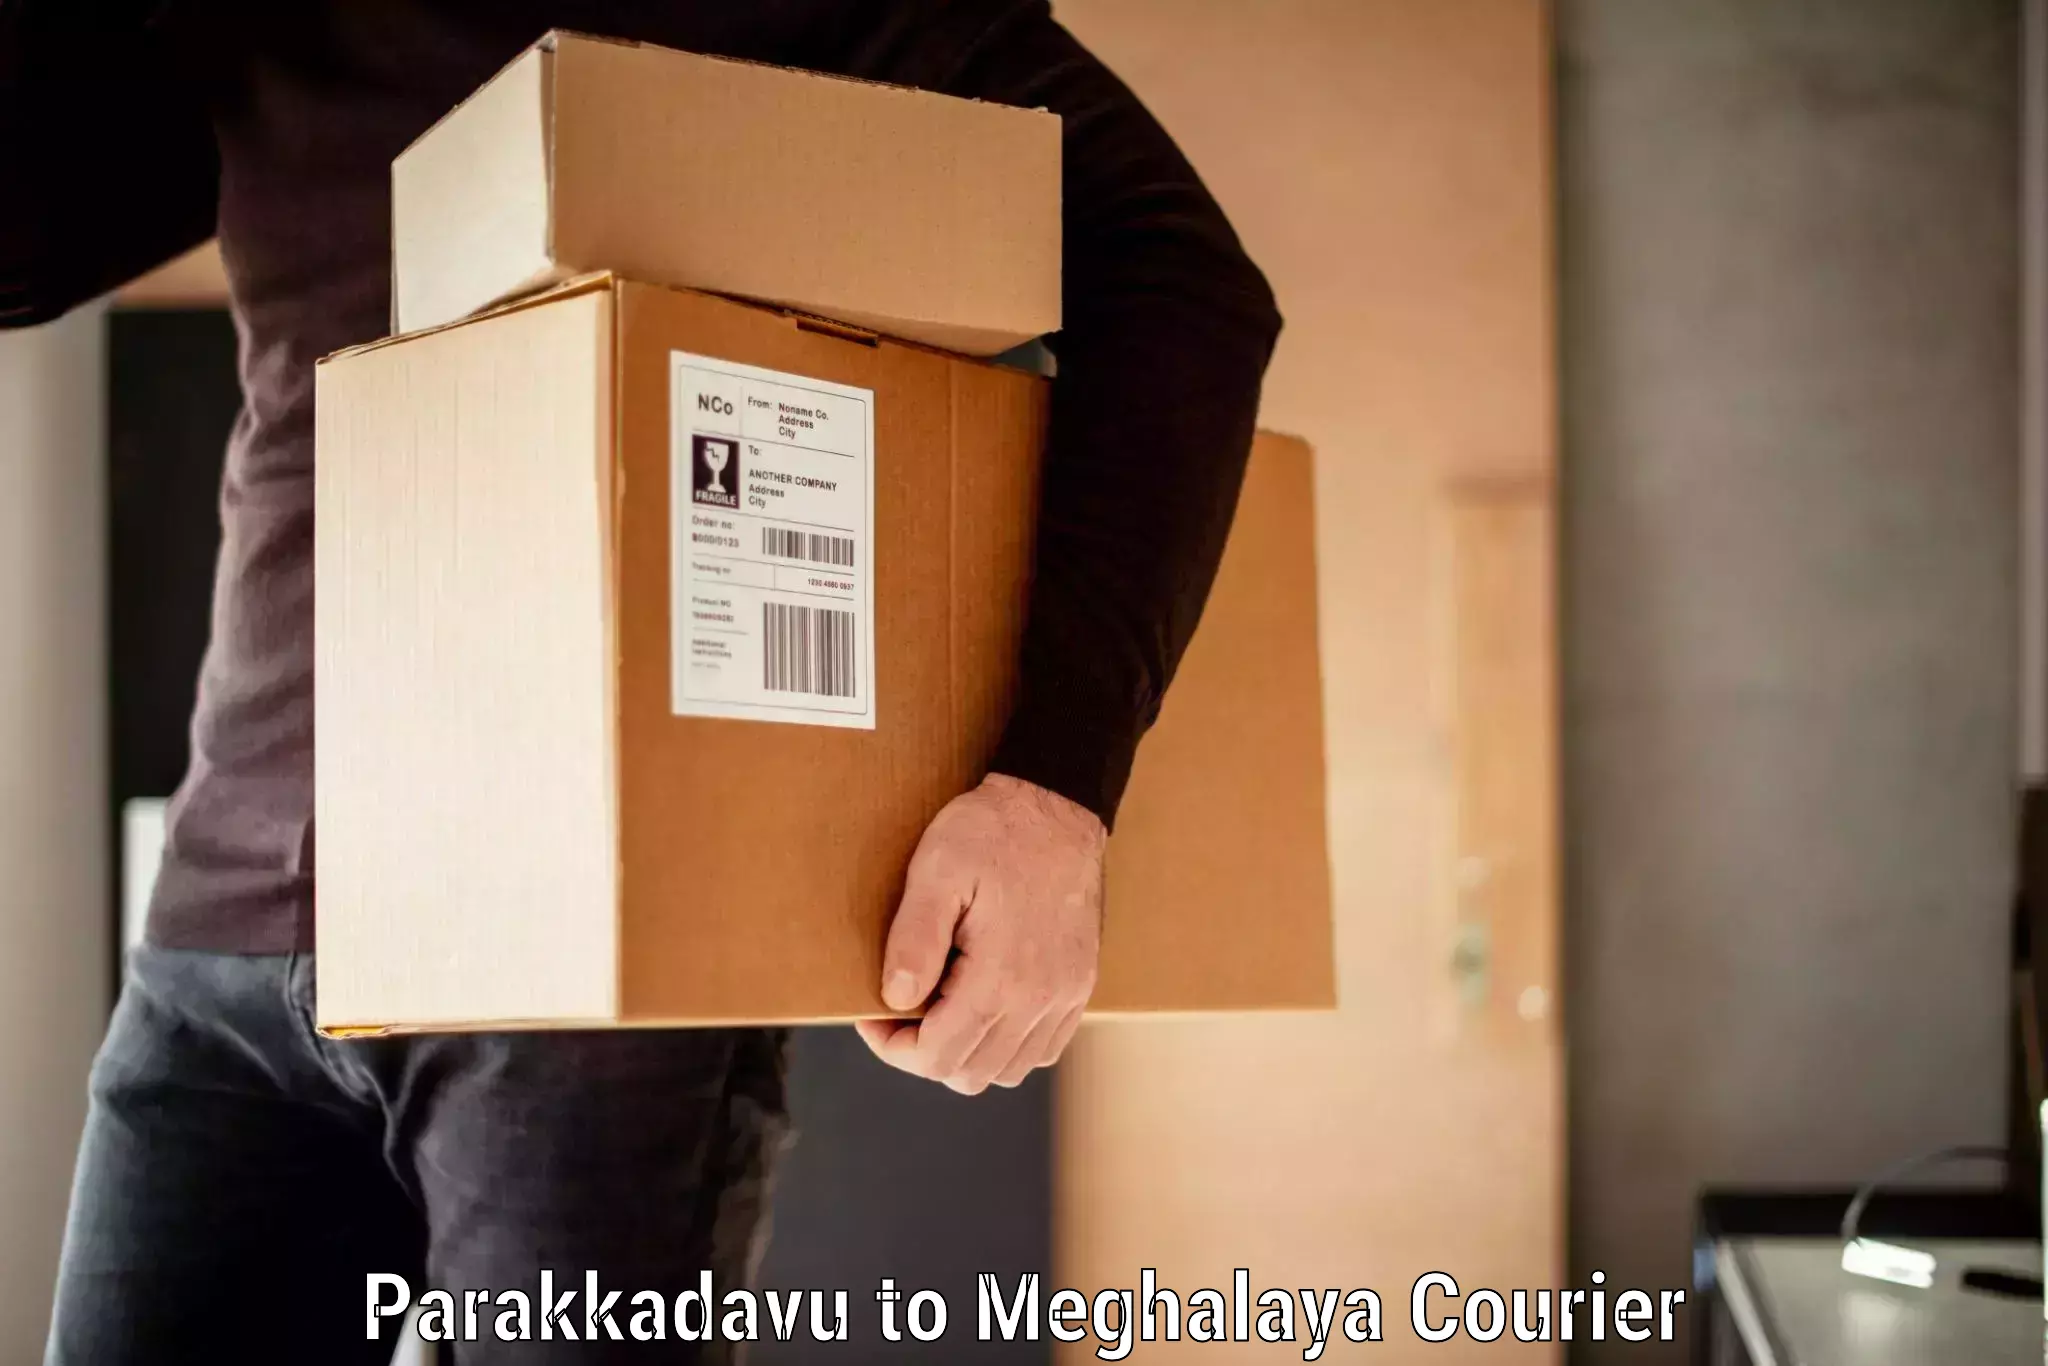 Luggage shipment specialists Parakkadavu to Meghalaya